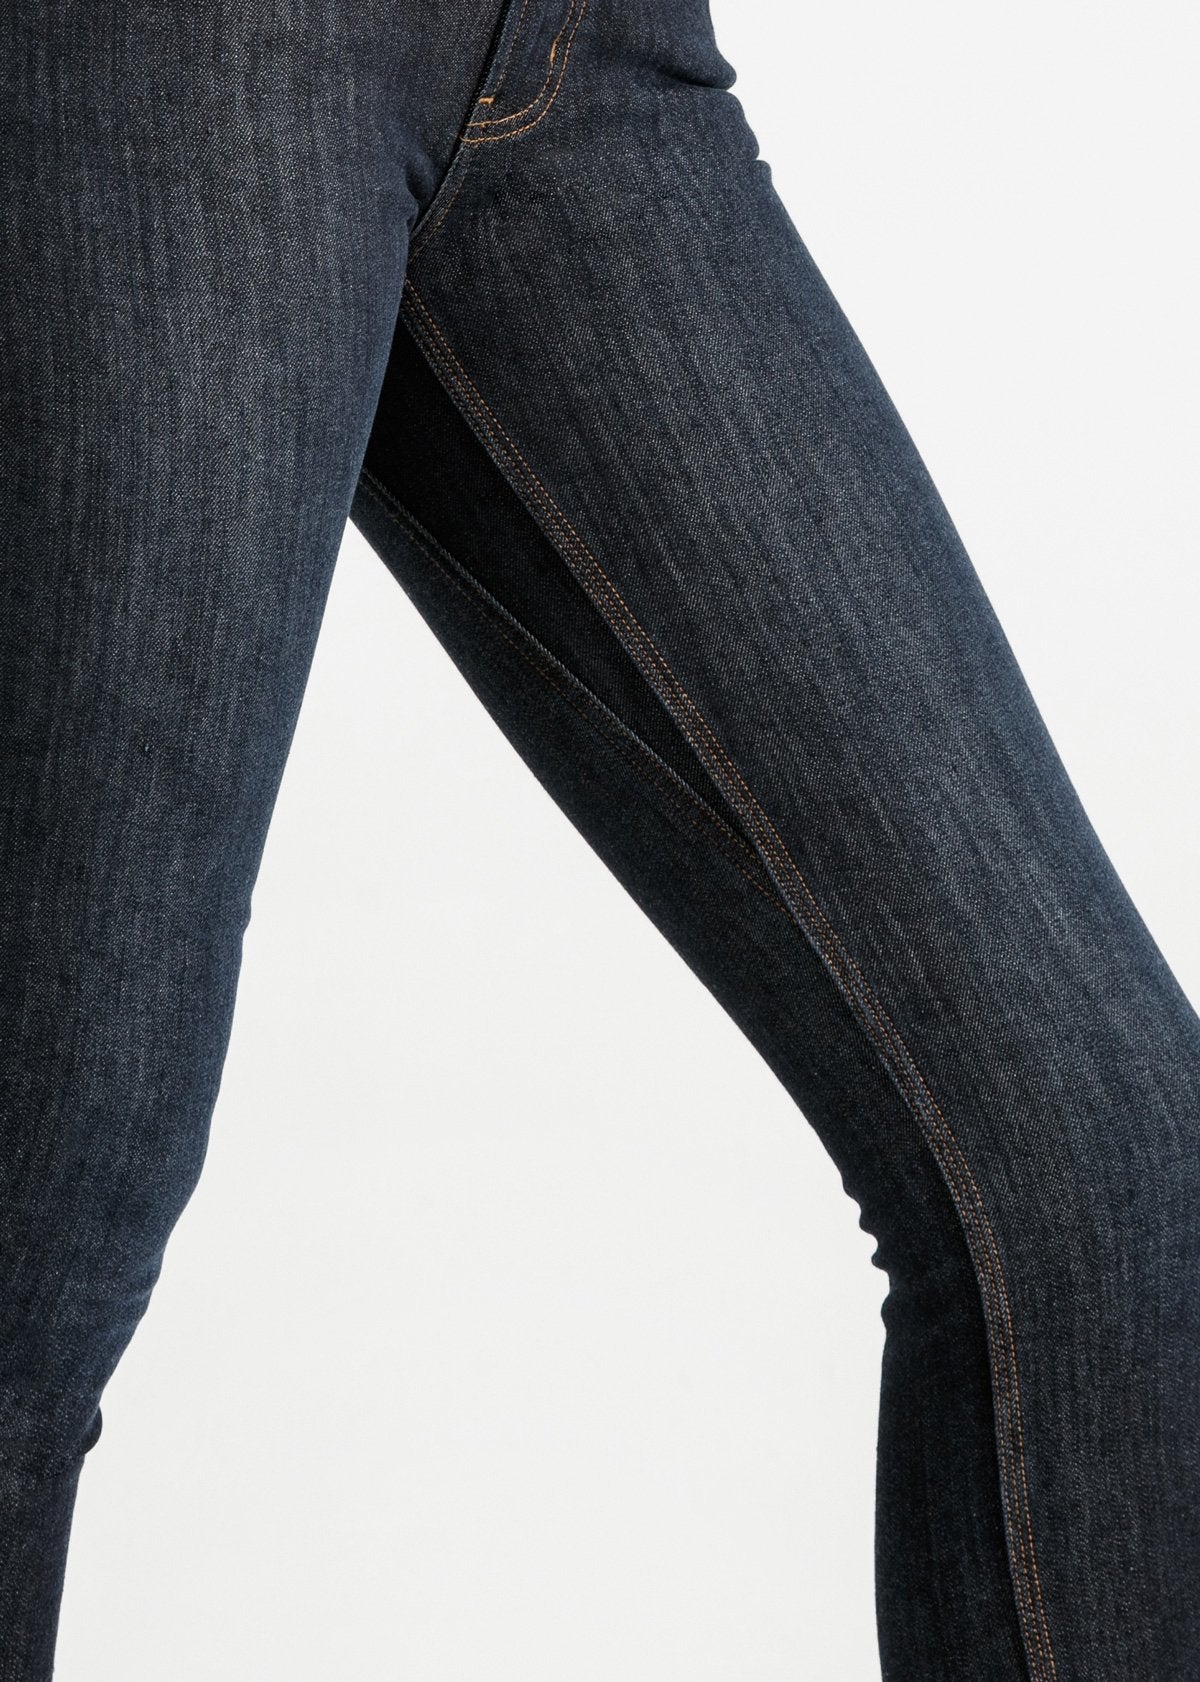 Women's Slim Fit Fleece Stretch Jeans